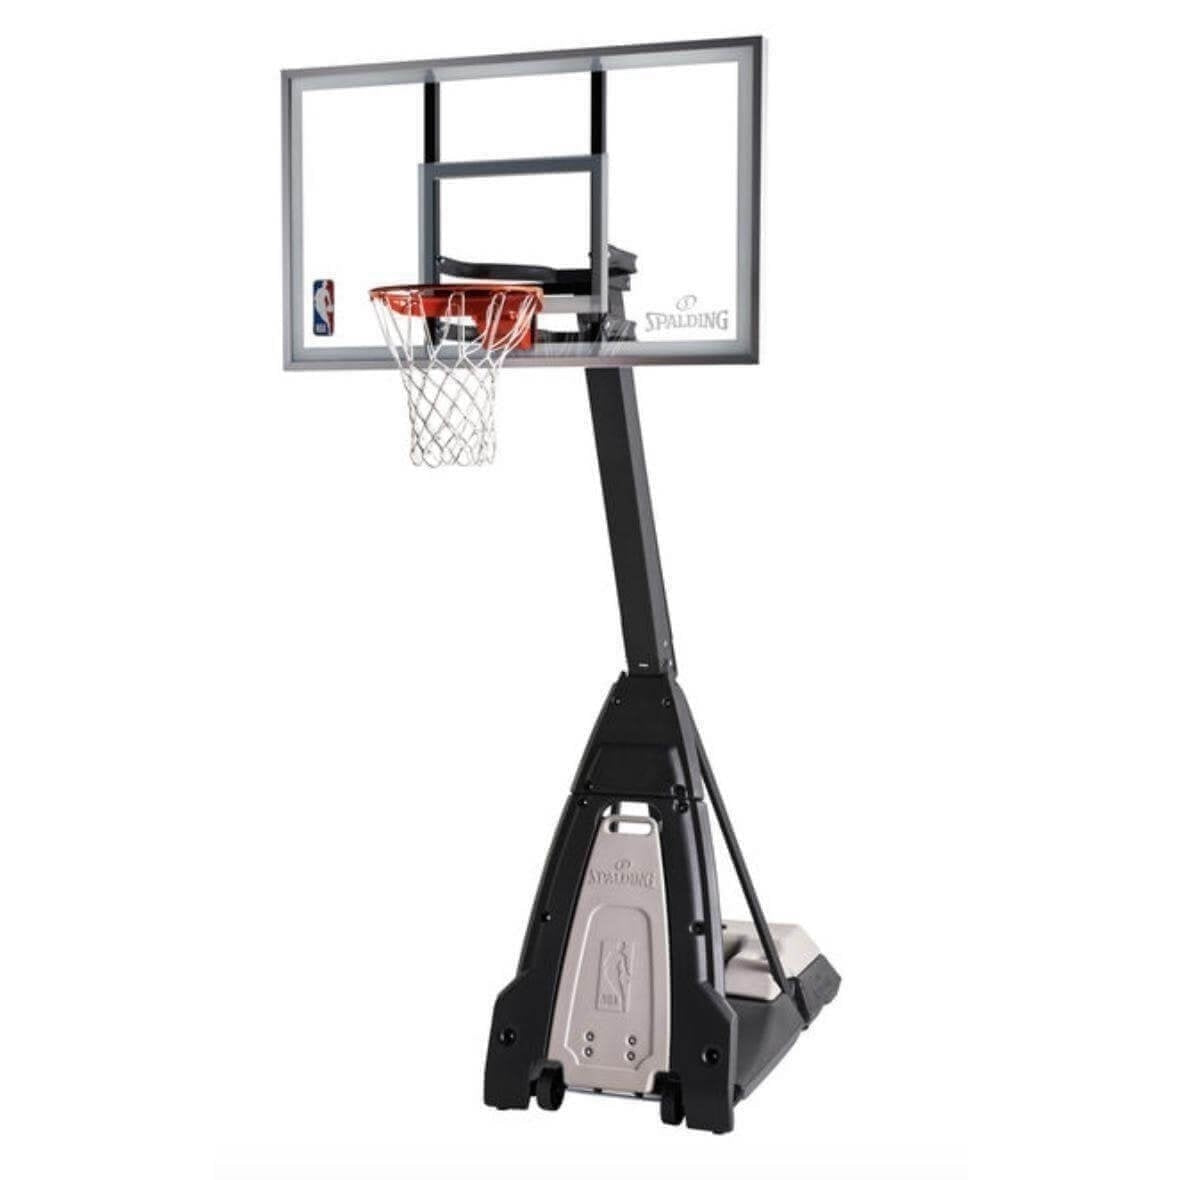 Portable Basketball Hoops